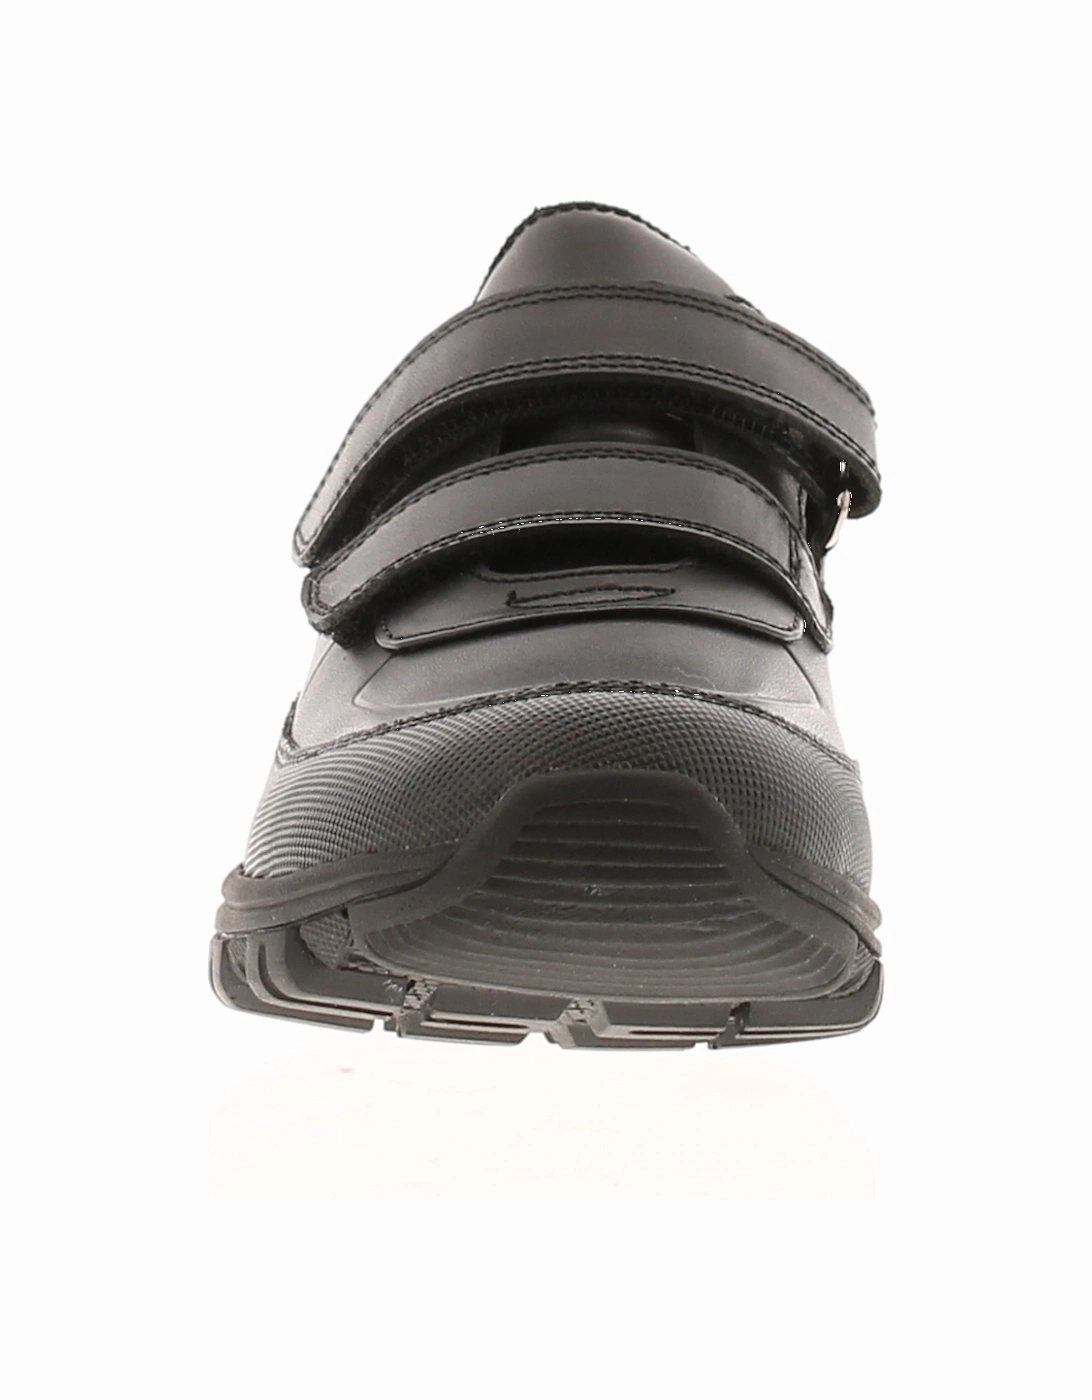 Boys School Shoes Blythe Leather black UK Size